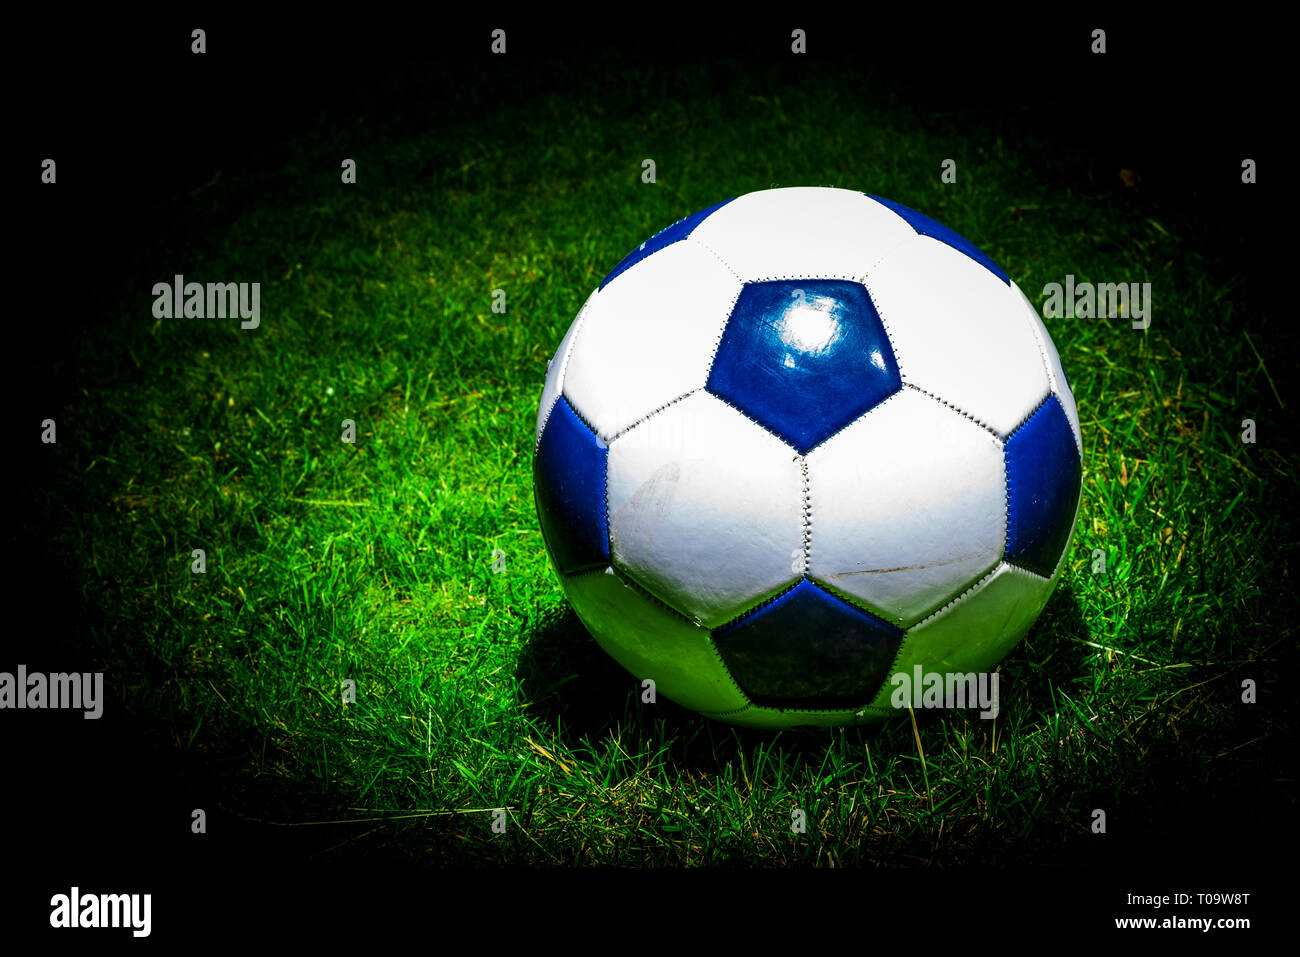 Soccerball portant sur l'herbe à l'honneur Banque D'Images